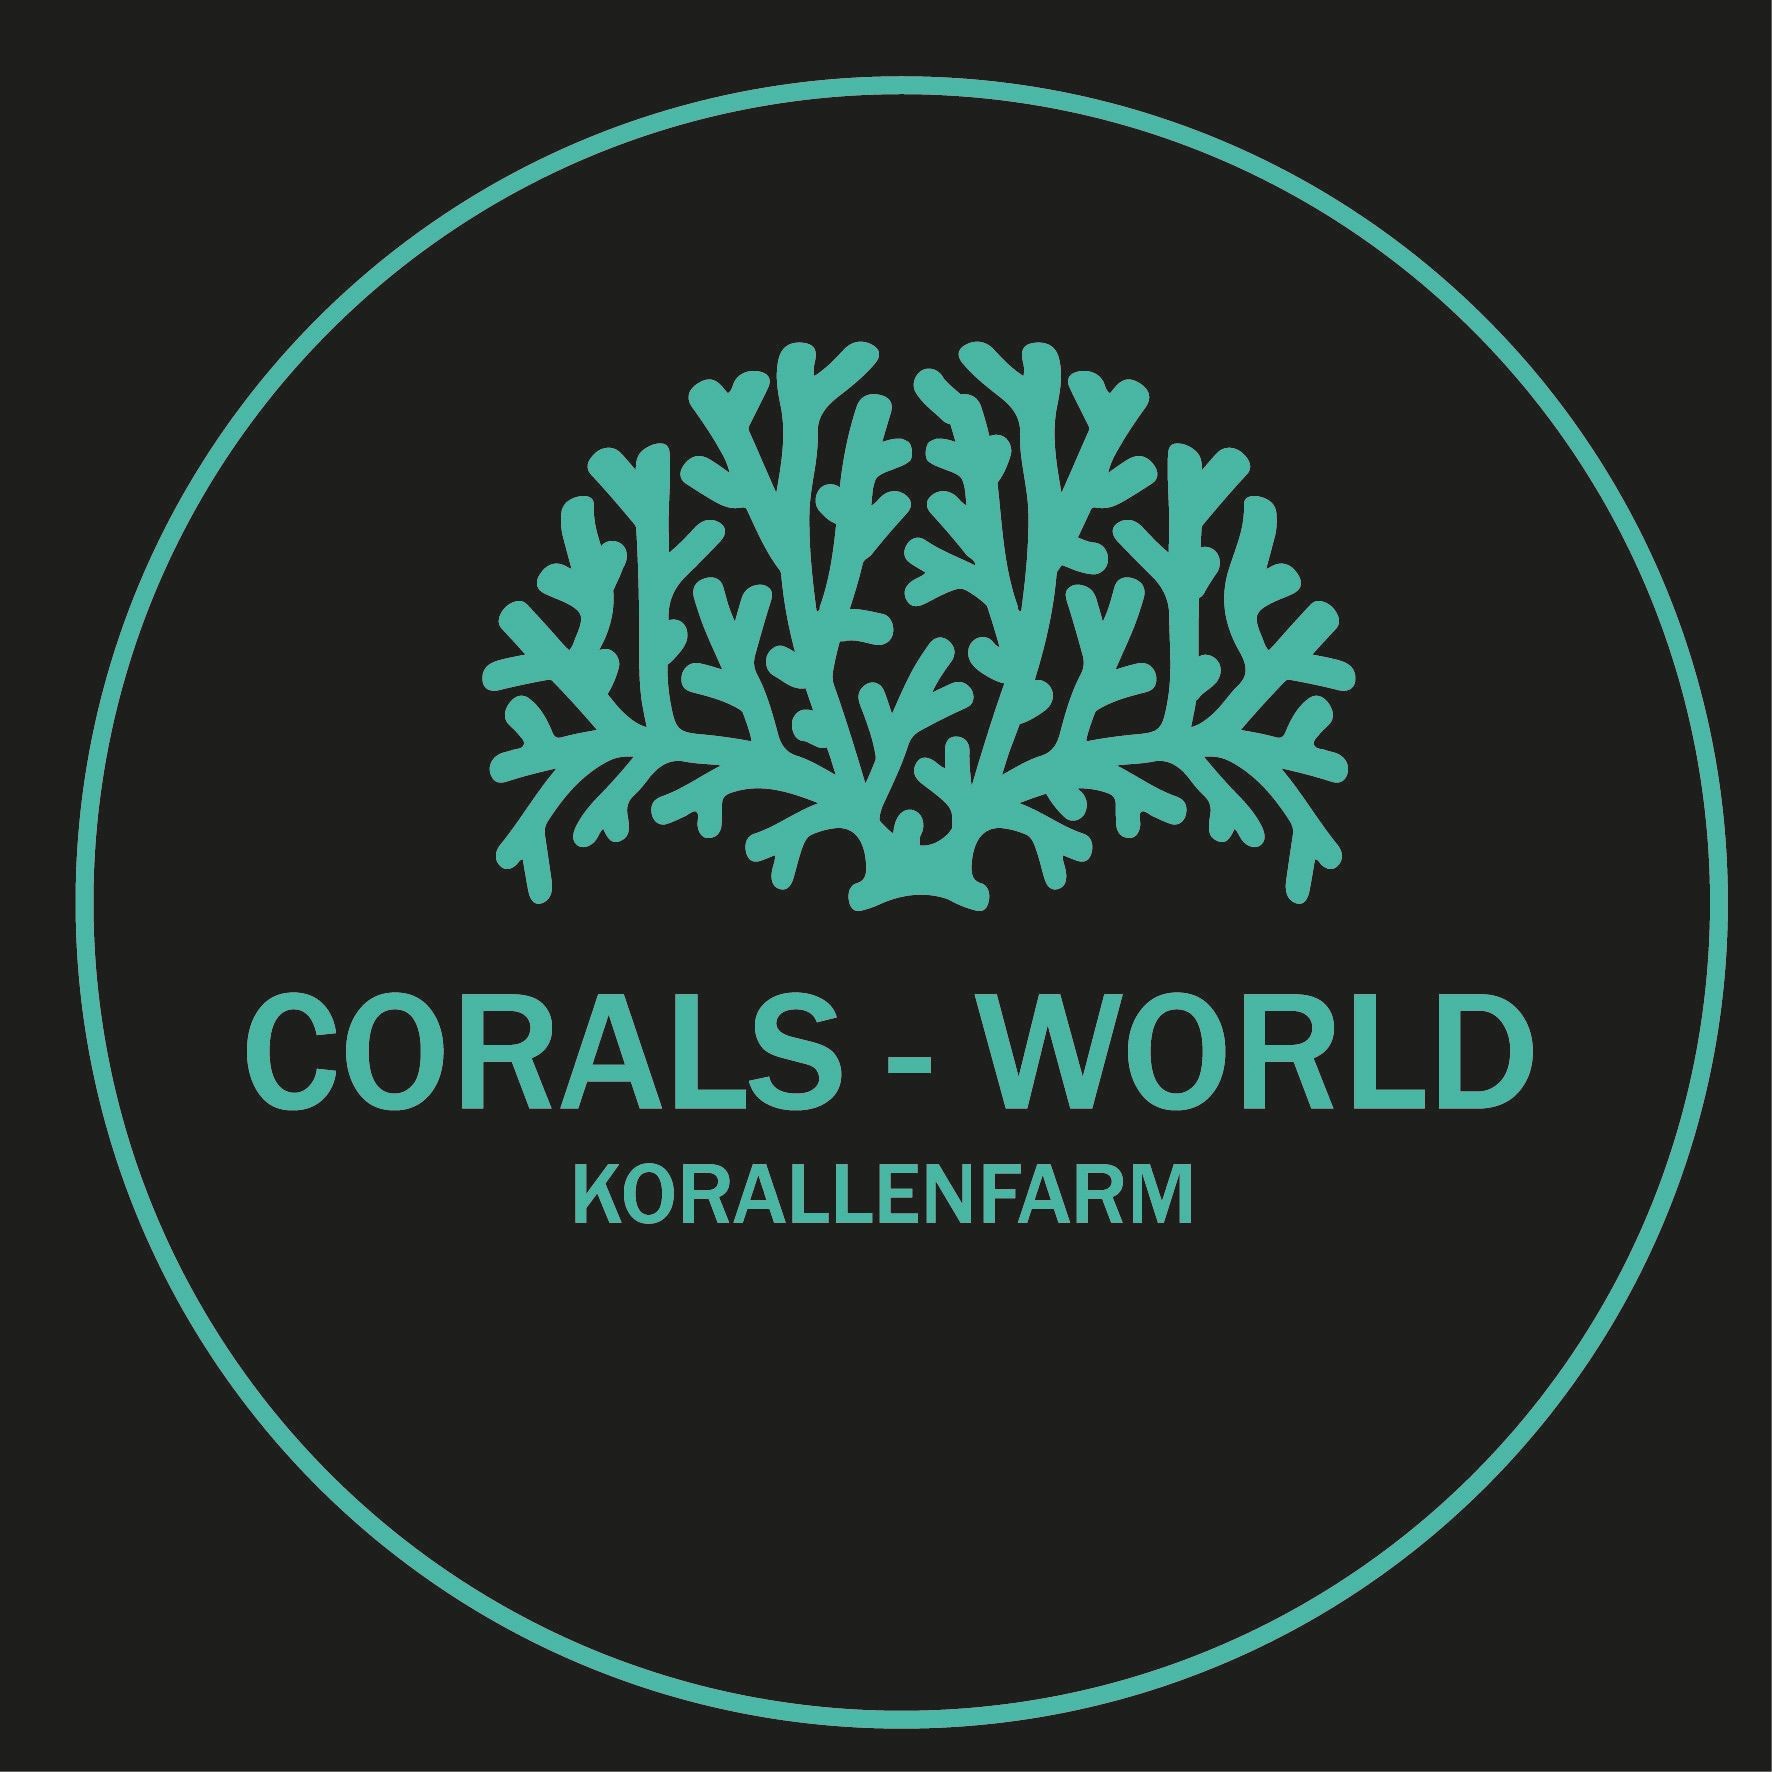 Corals-world